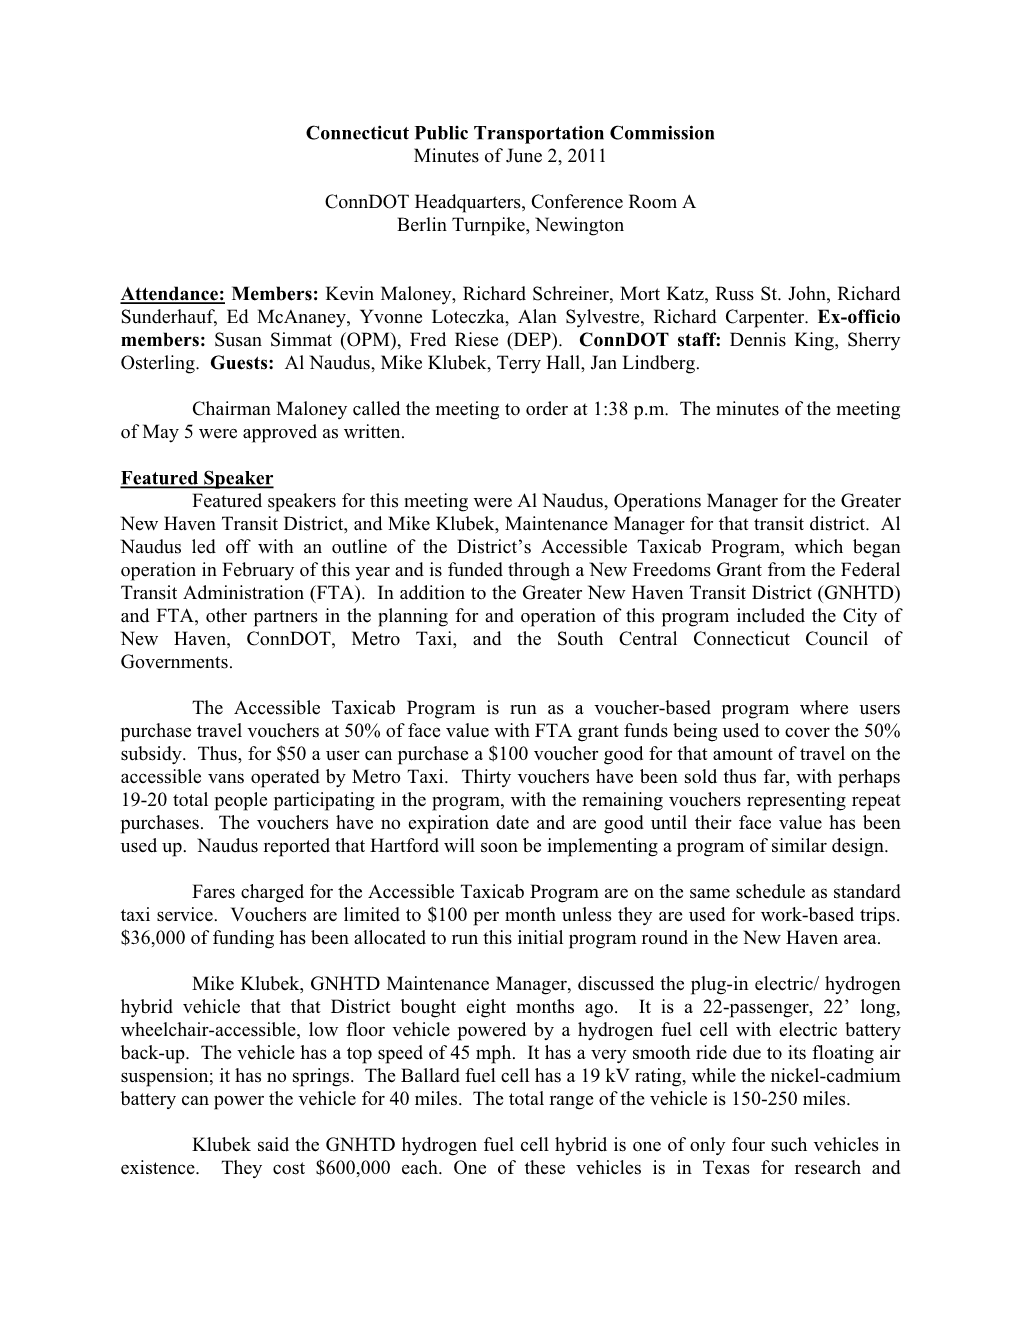 Connecticut Public Transportation Commission Minutes of June 2, 2011